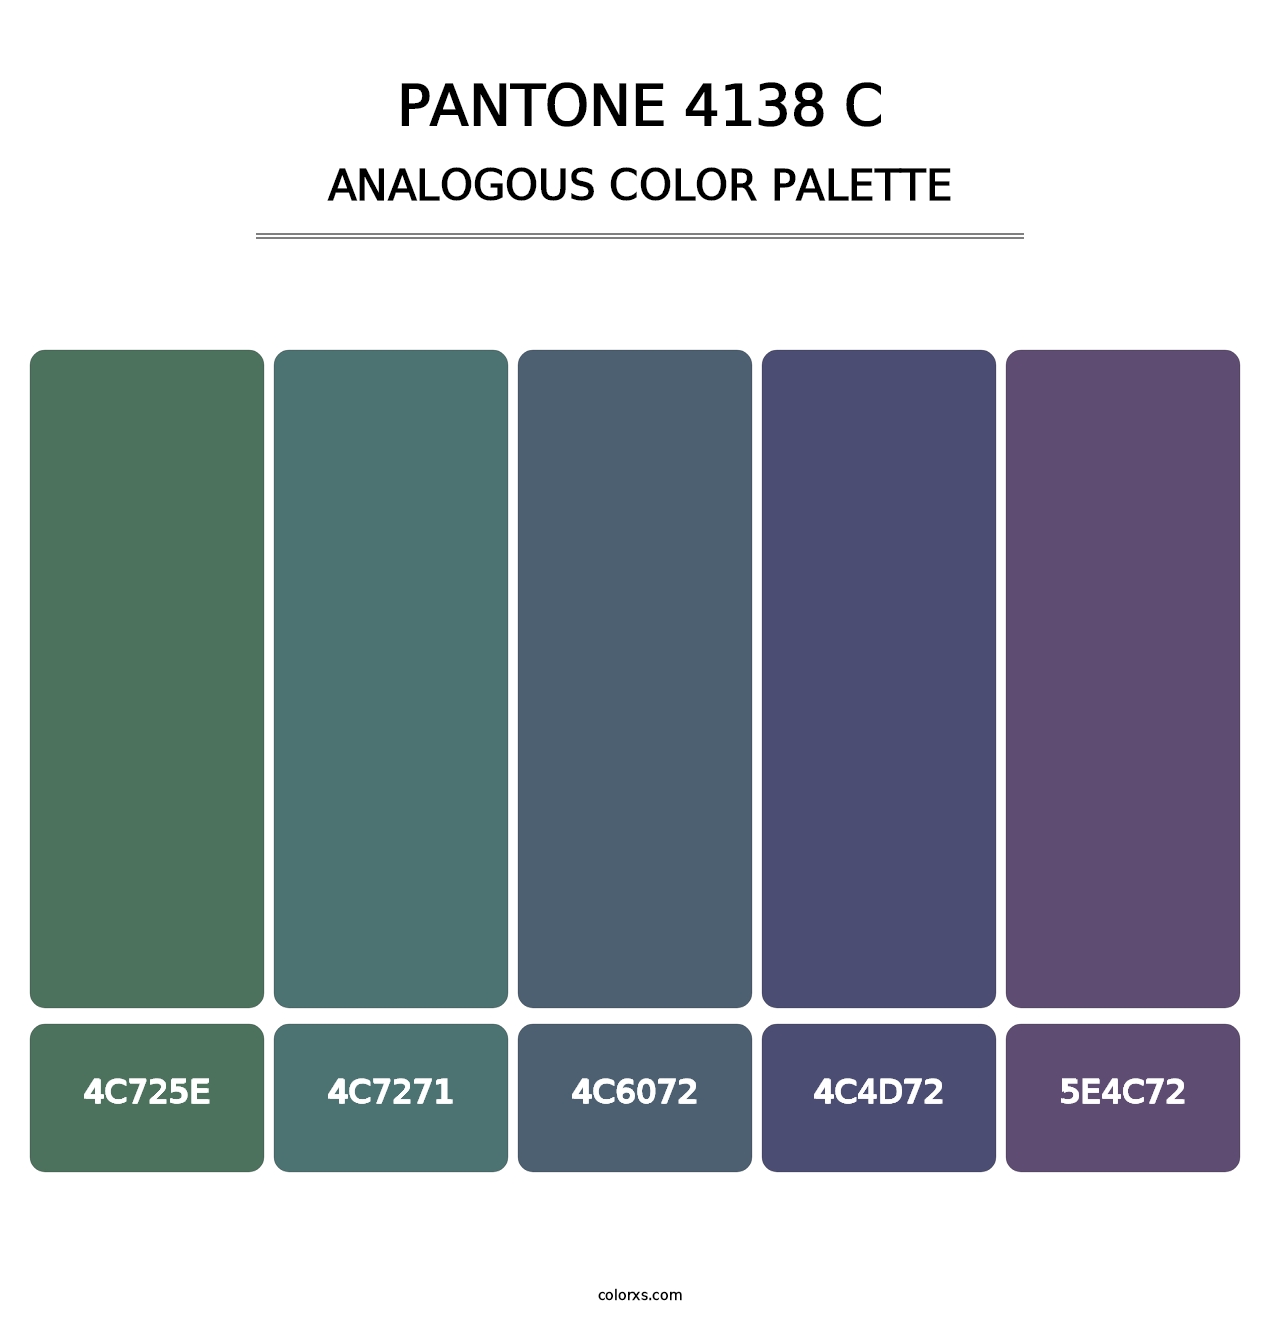 PANTONE 4138 C - Analogous Color Palette